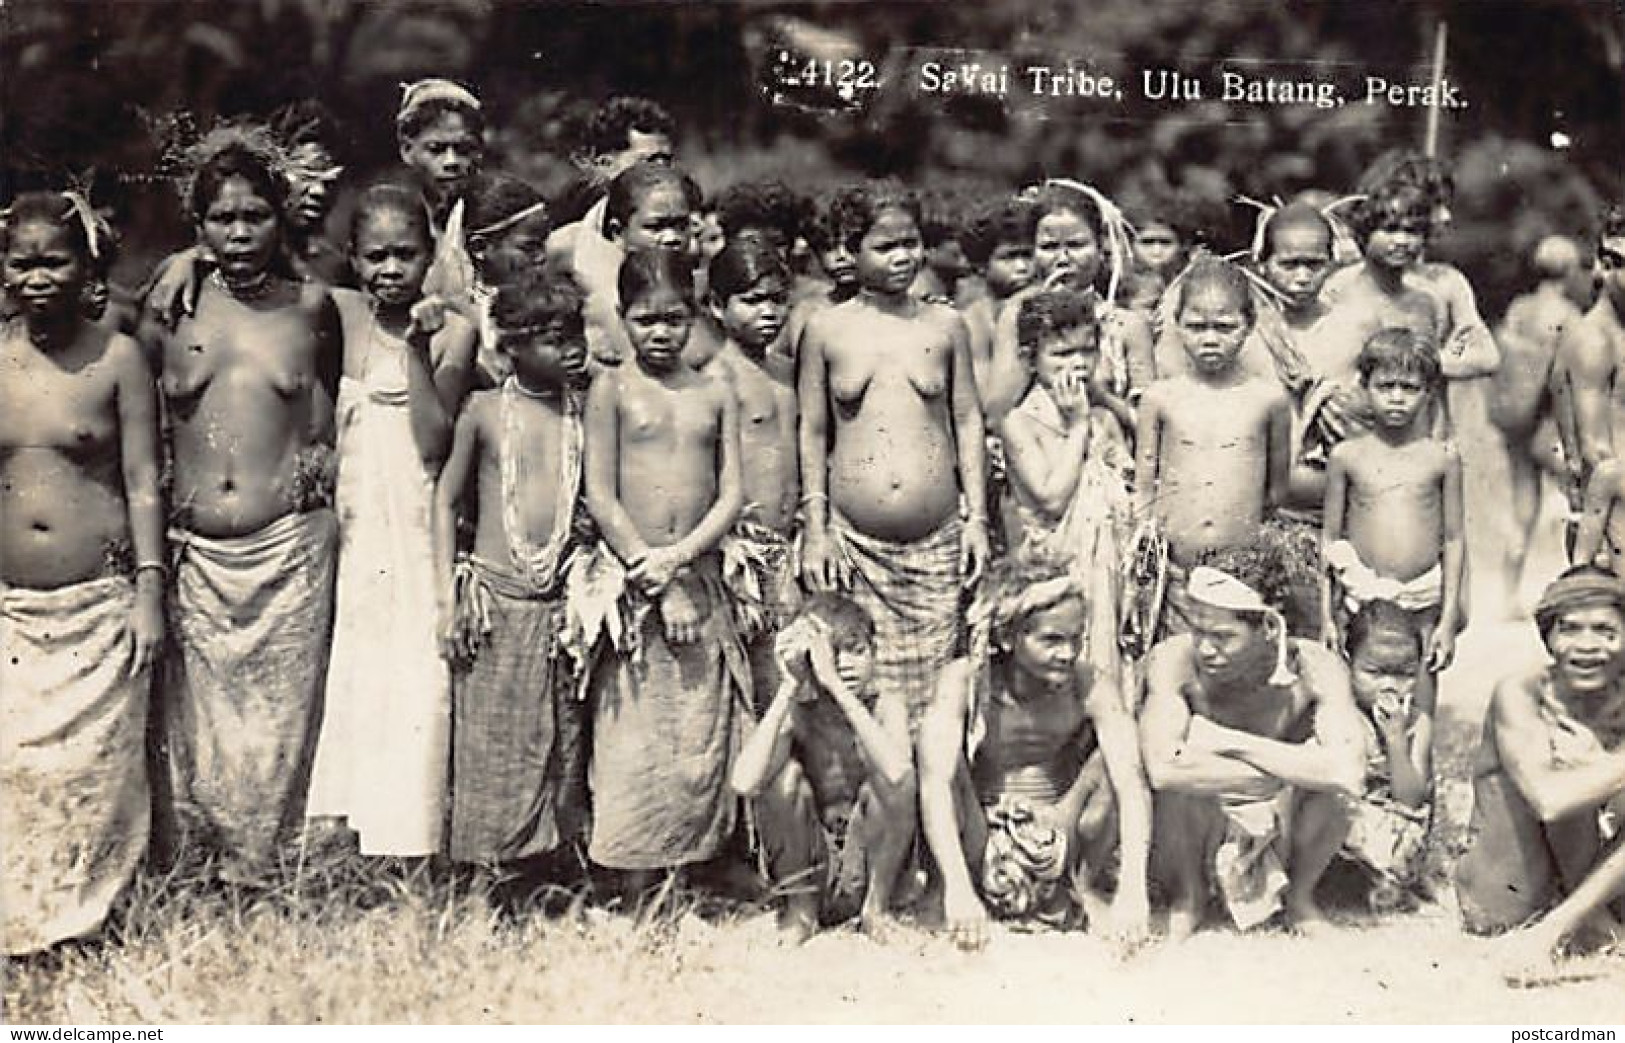 Malaysia - ULU BATANG Perak - ETHNIC NUDE - Sakai Tribe - REAL PHOTO - Publ. Unknown  - Malasia